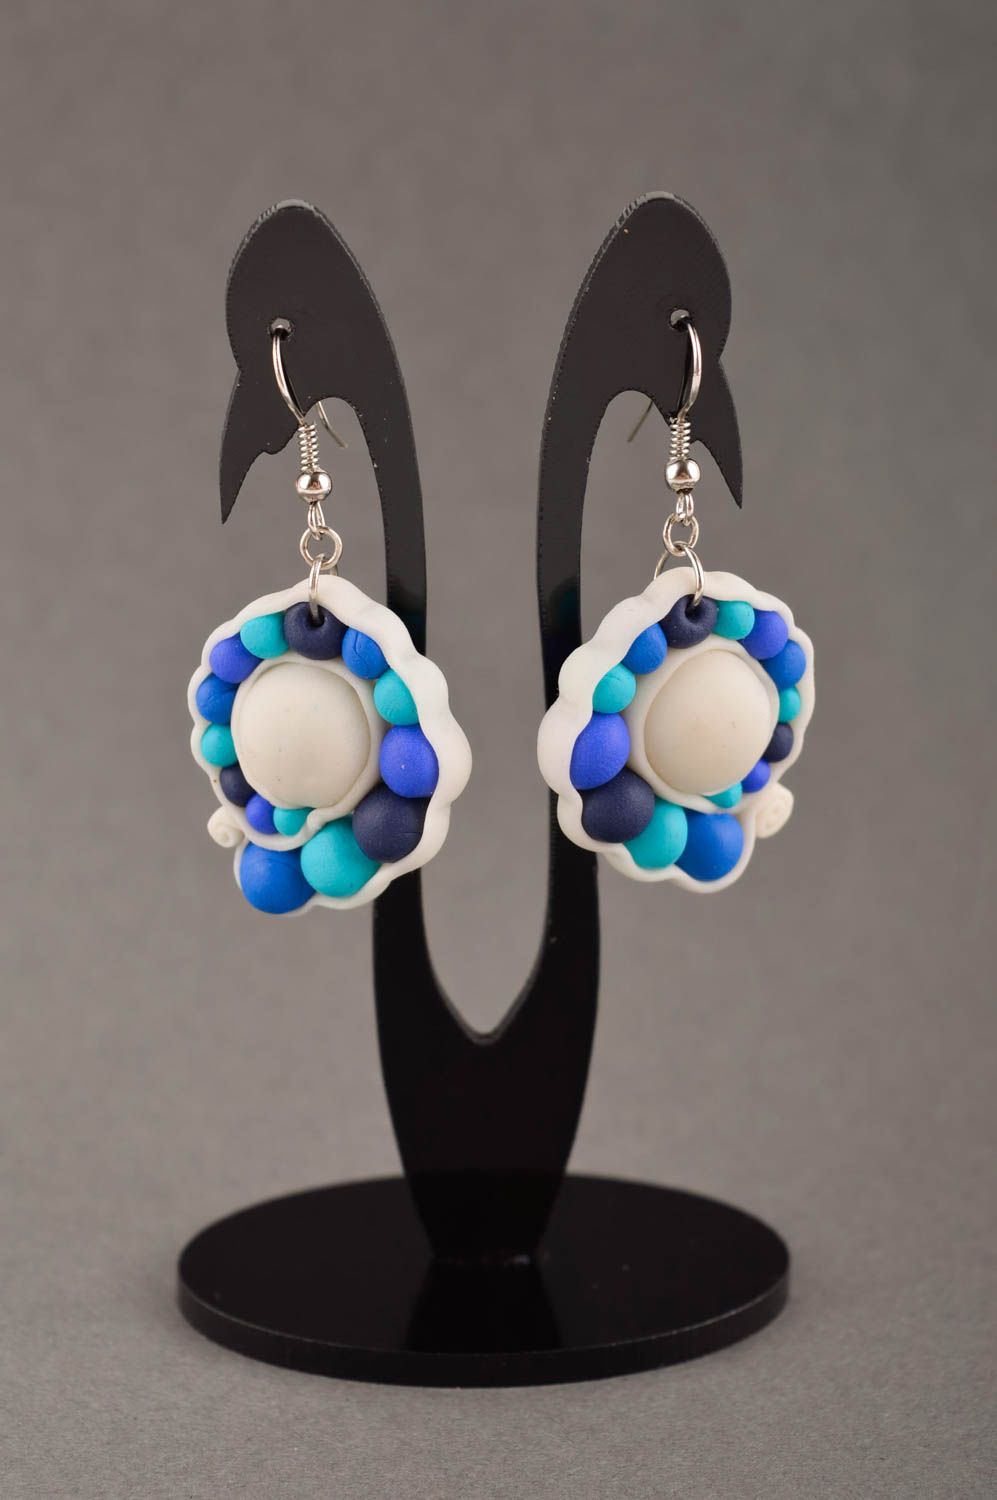 Handmade earrings clay accessory unusual jewelry gift ideas flower earrings photo 1